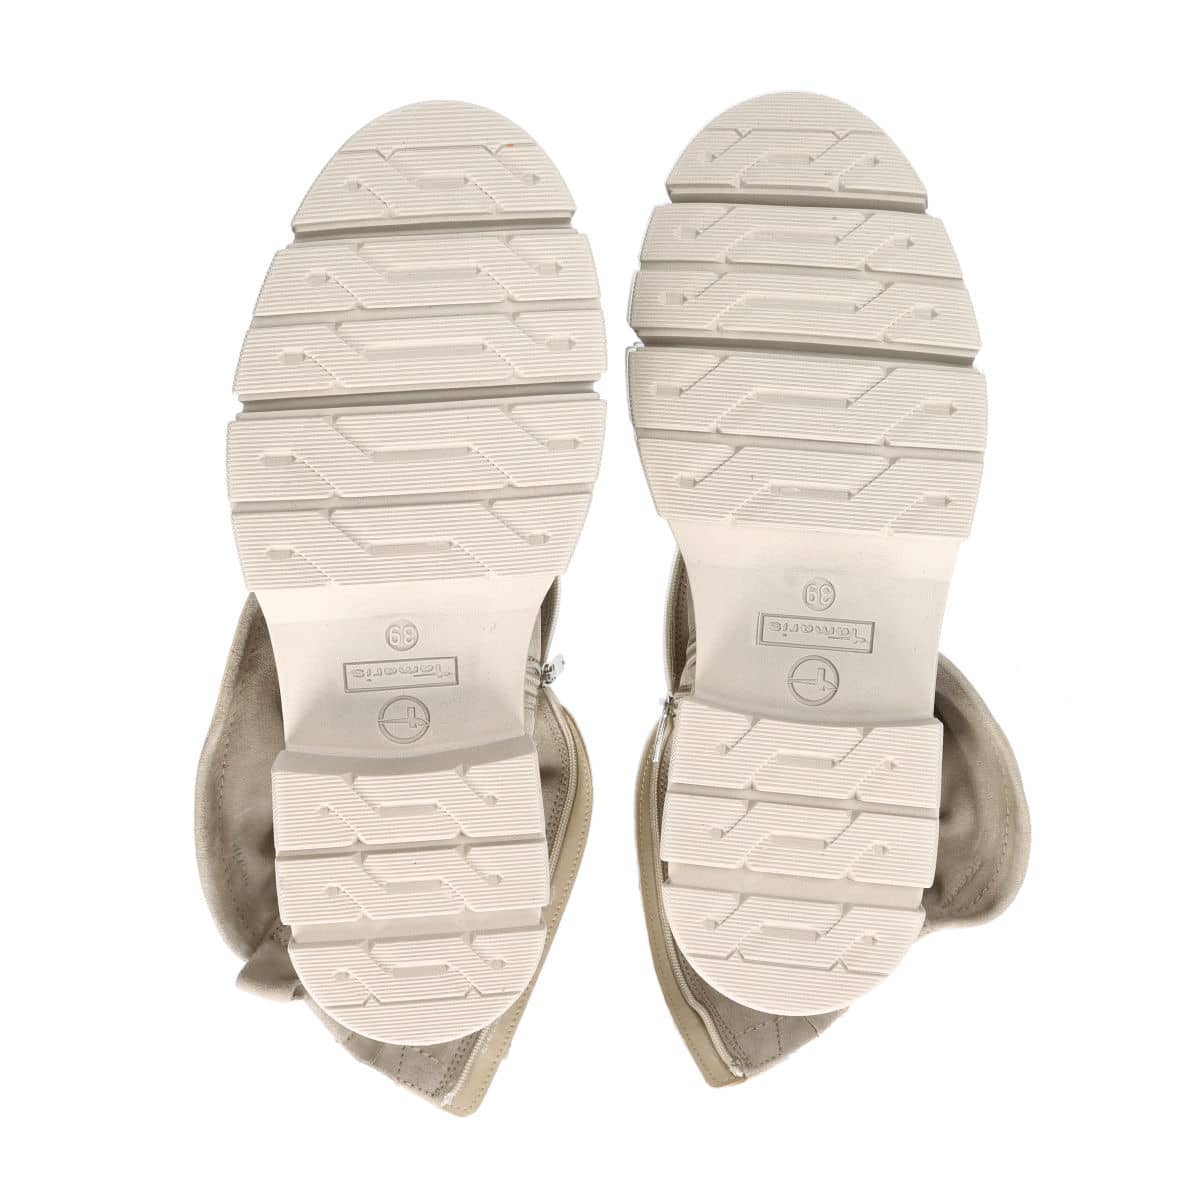 Tamaris women's zipper boots - beige | Robel.shoes